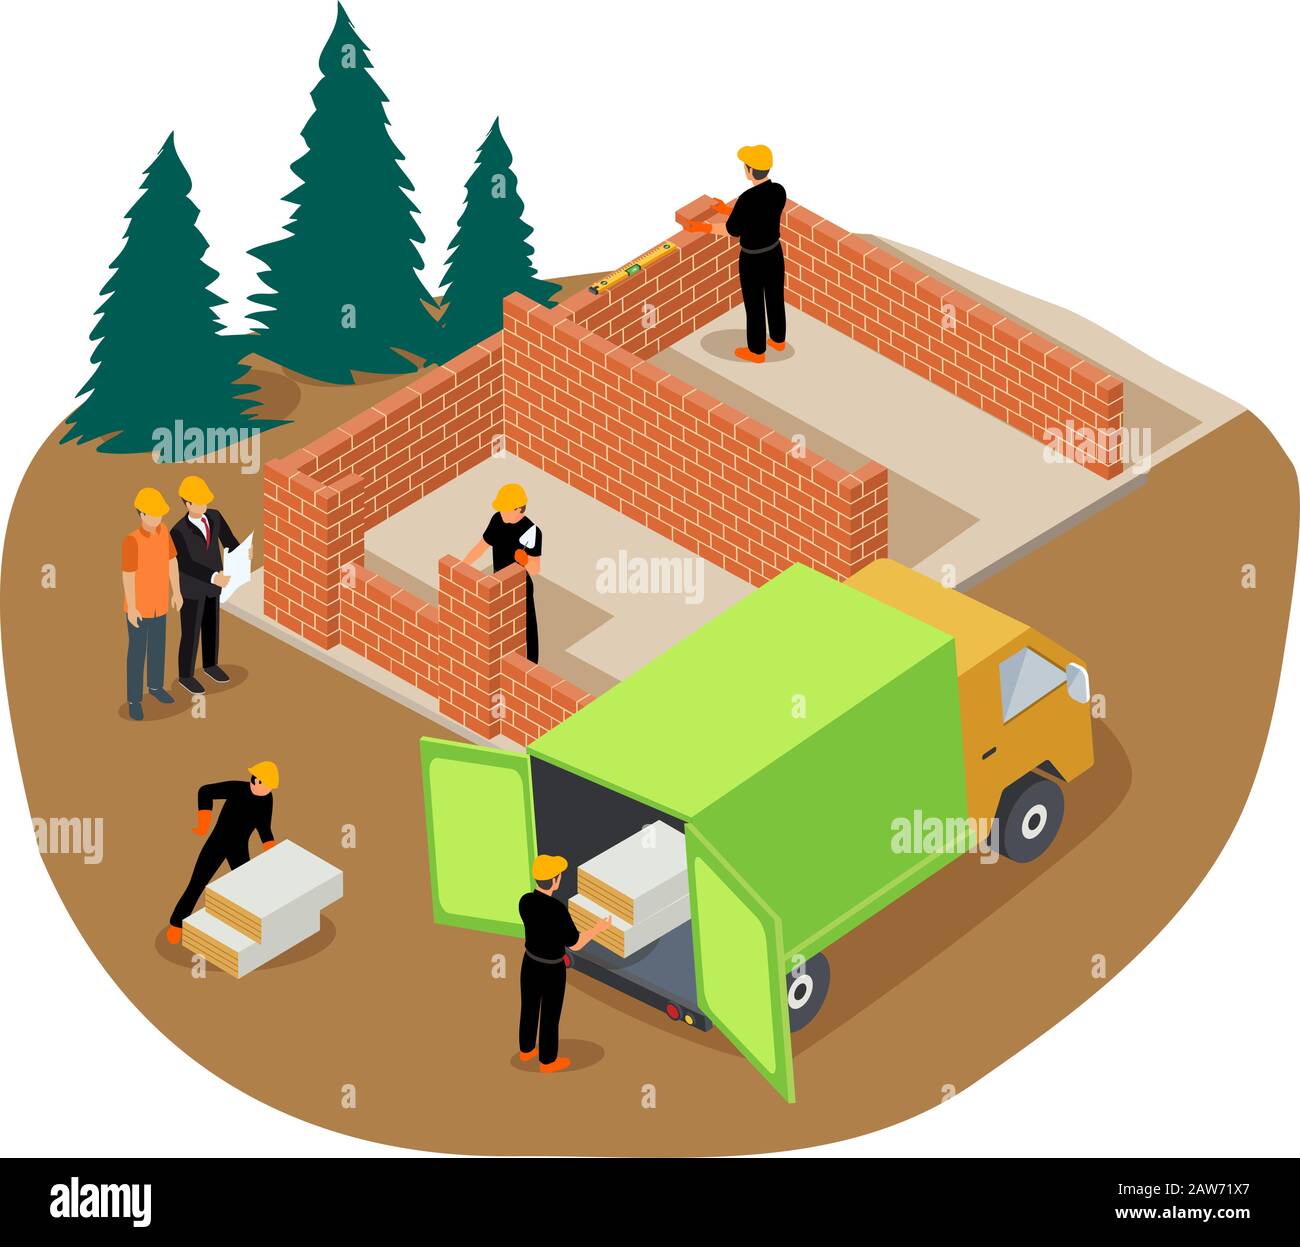 Illustrazione isometrica vettoriale dei lavoratori che costruiscono una casa privata in mattoni e che scaricano l'isolamento da un camion Illustrazione Vettoriale